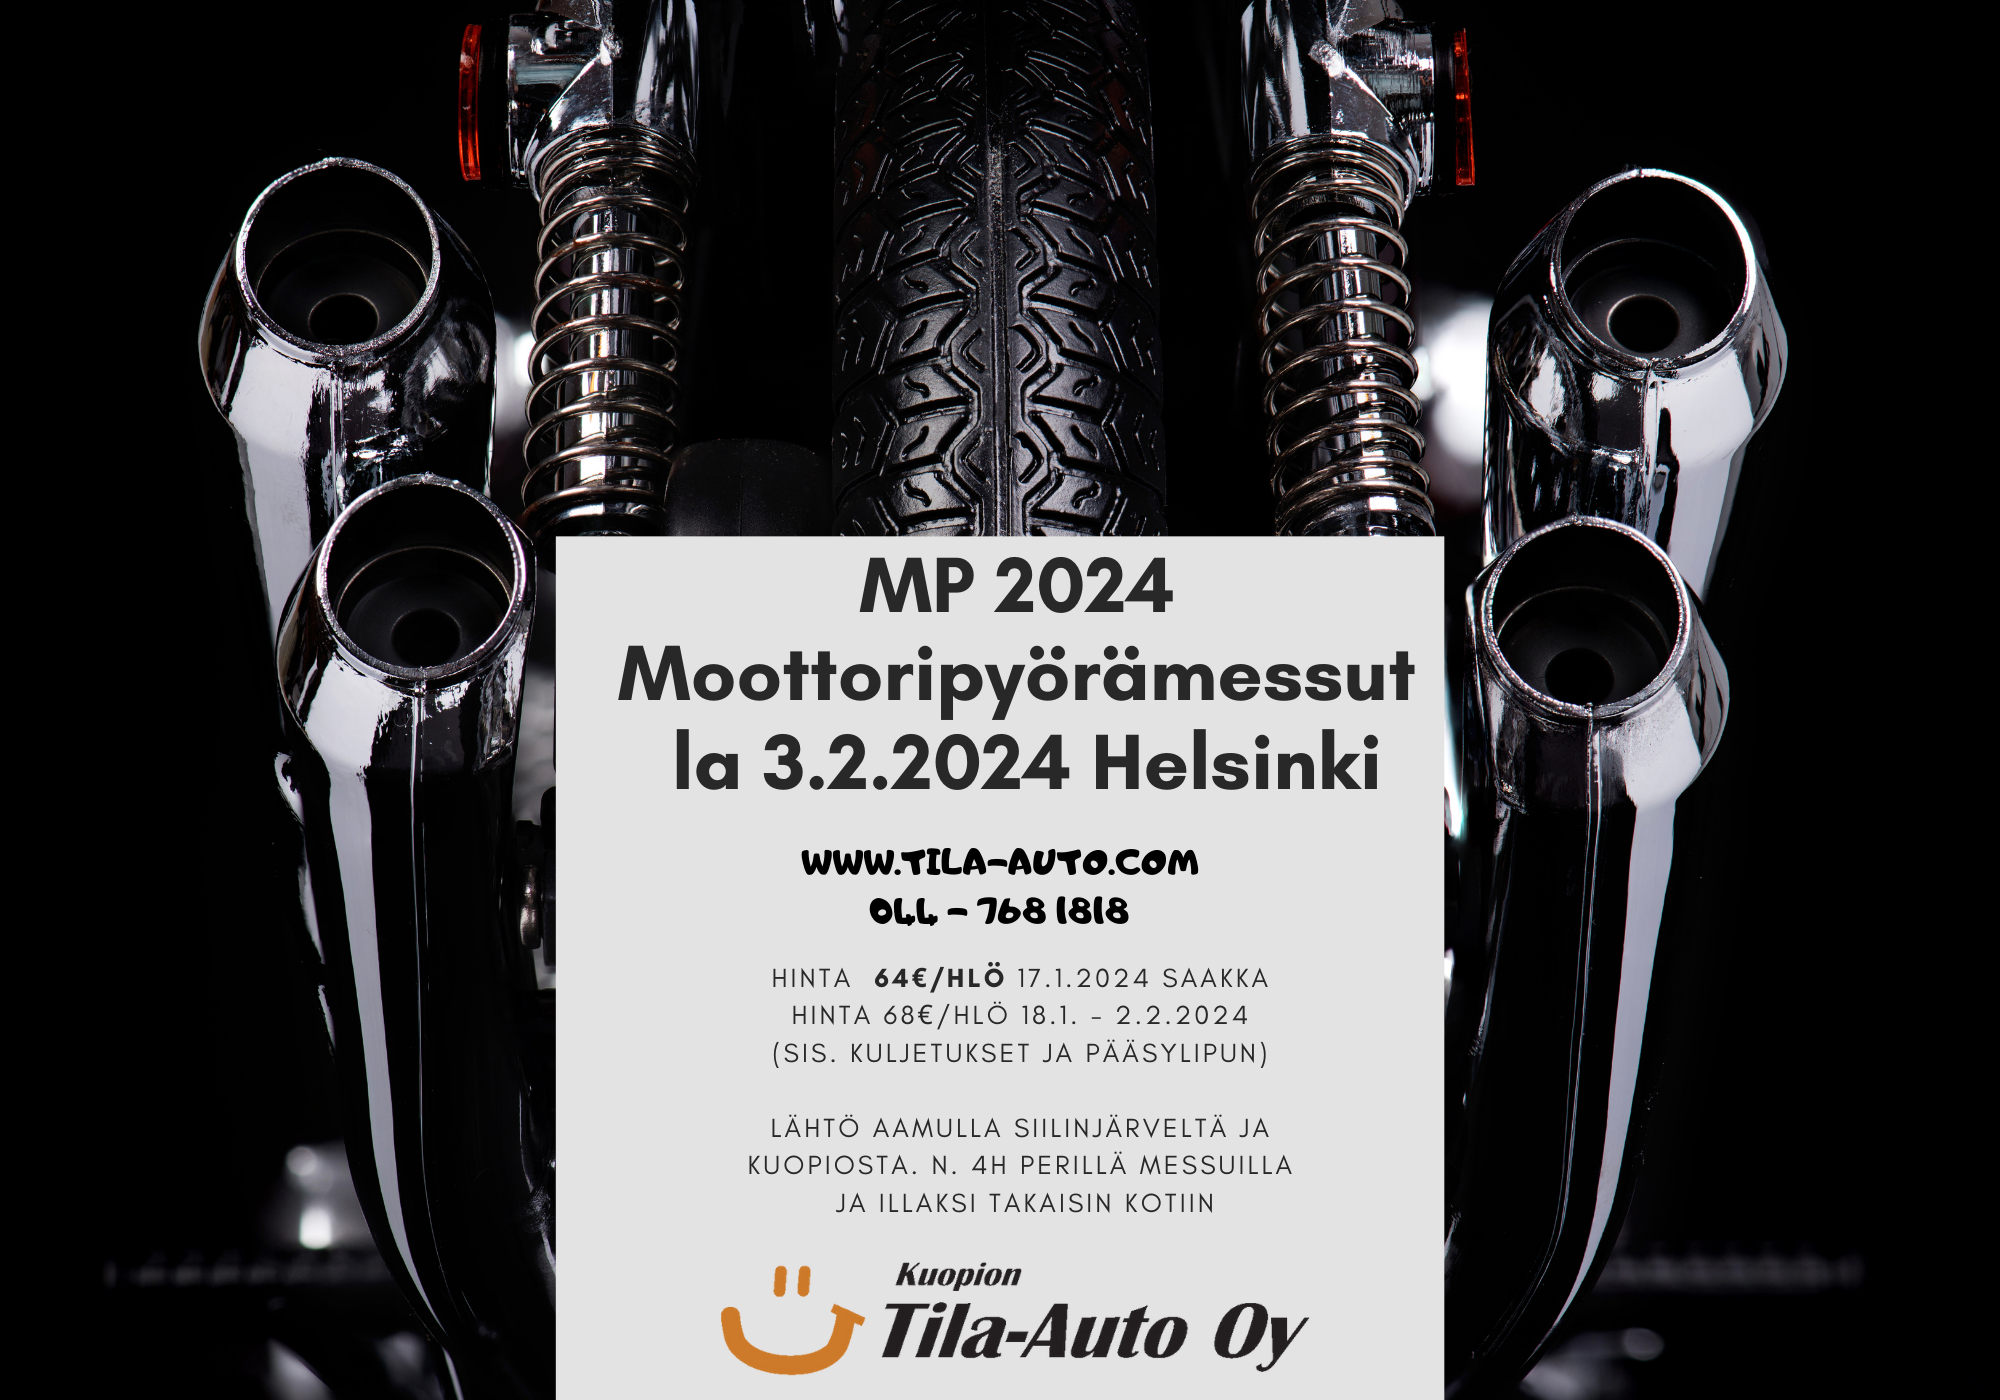 3.2.2024 Matka moottoripyörämessuille Helsinkiin - MP24